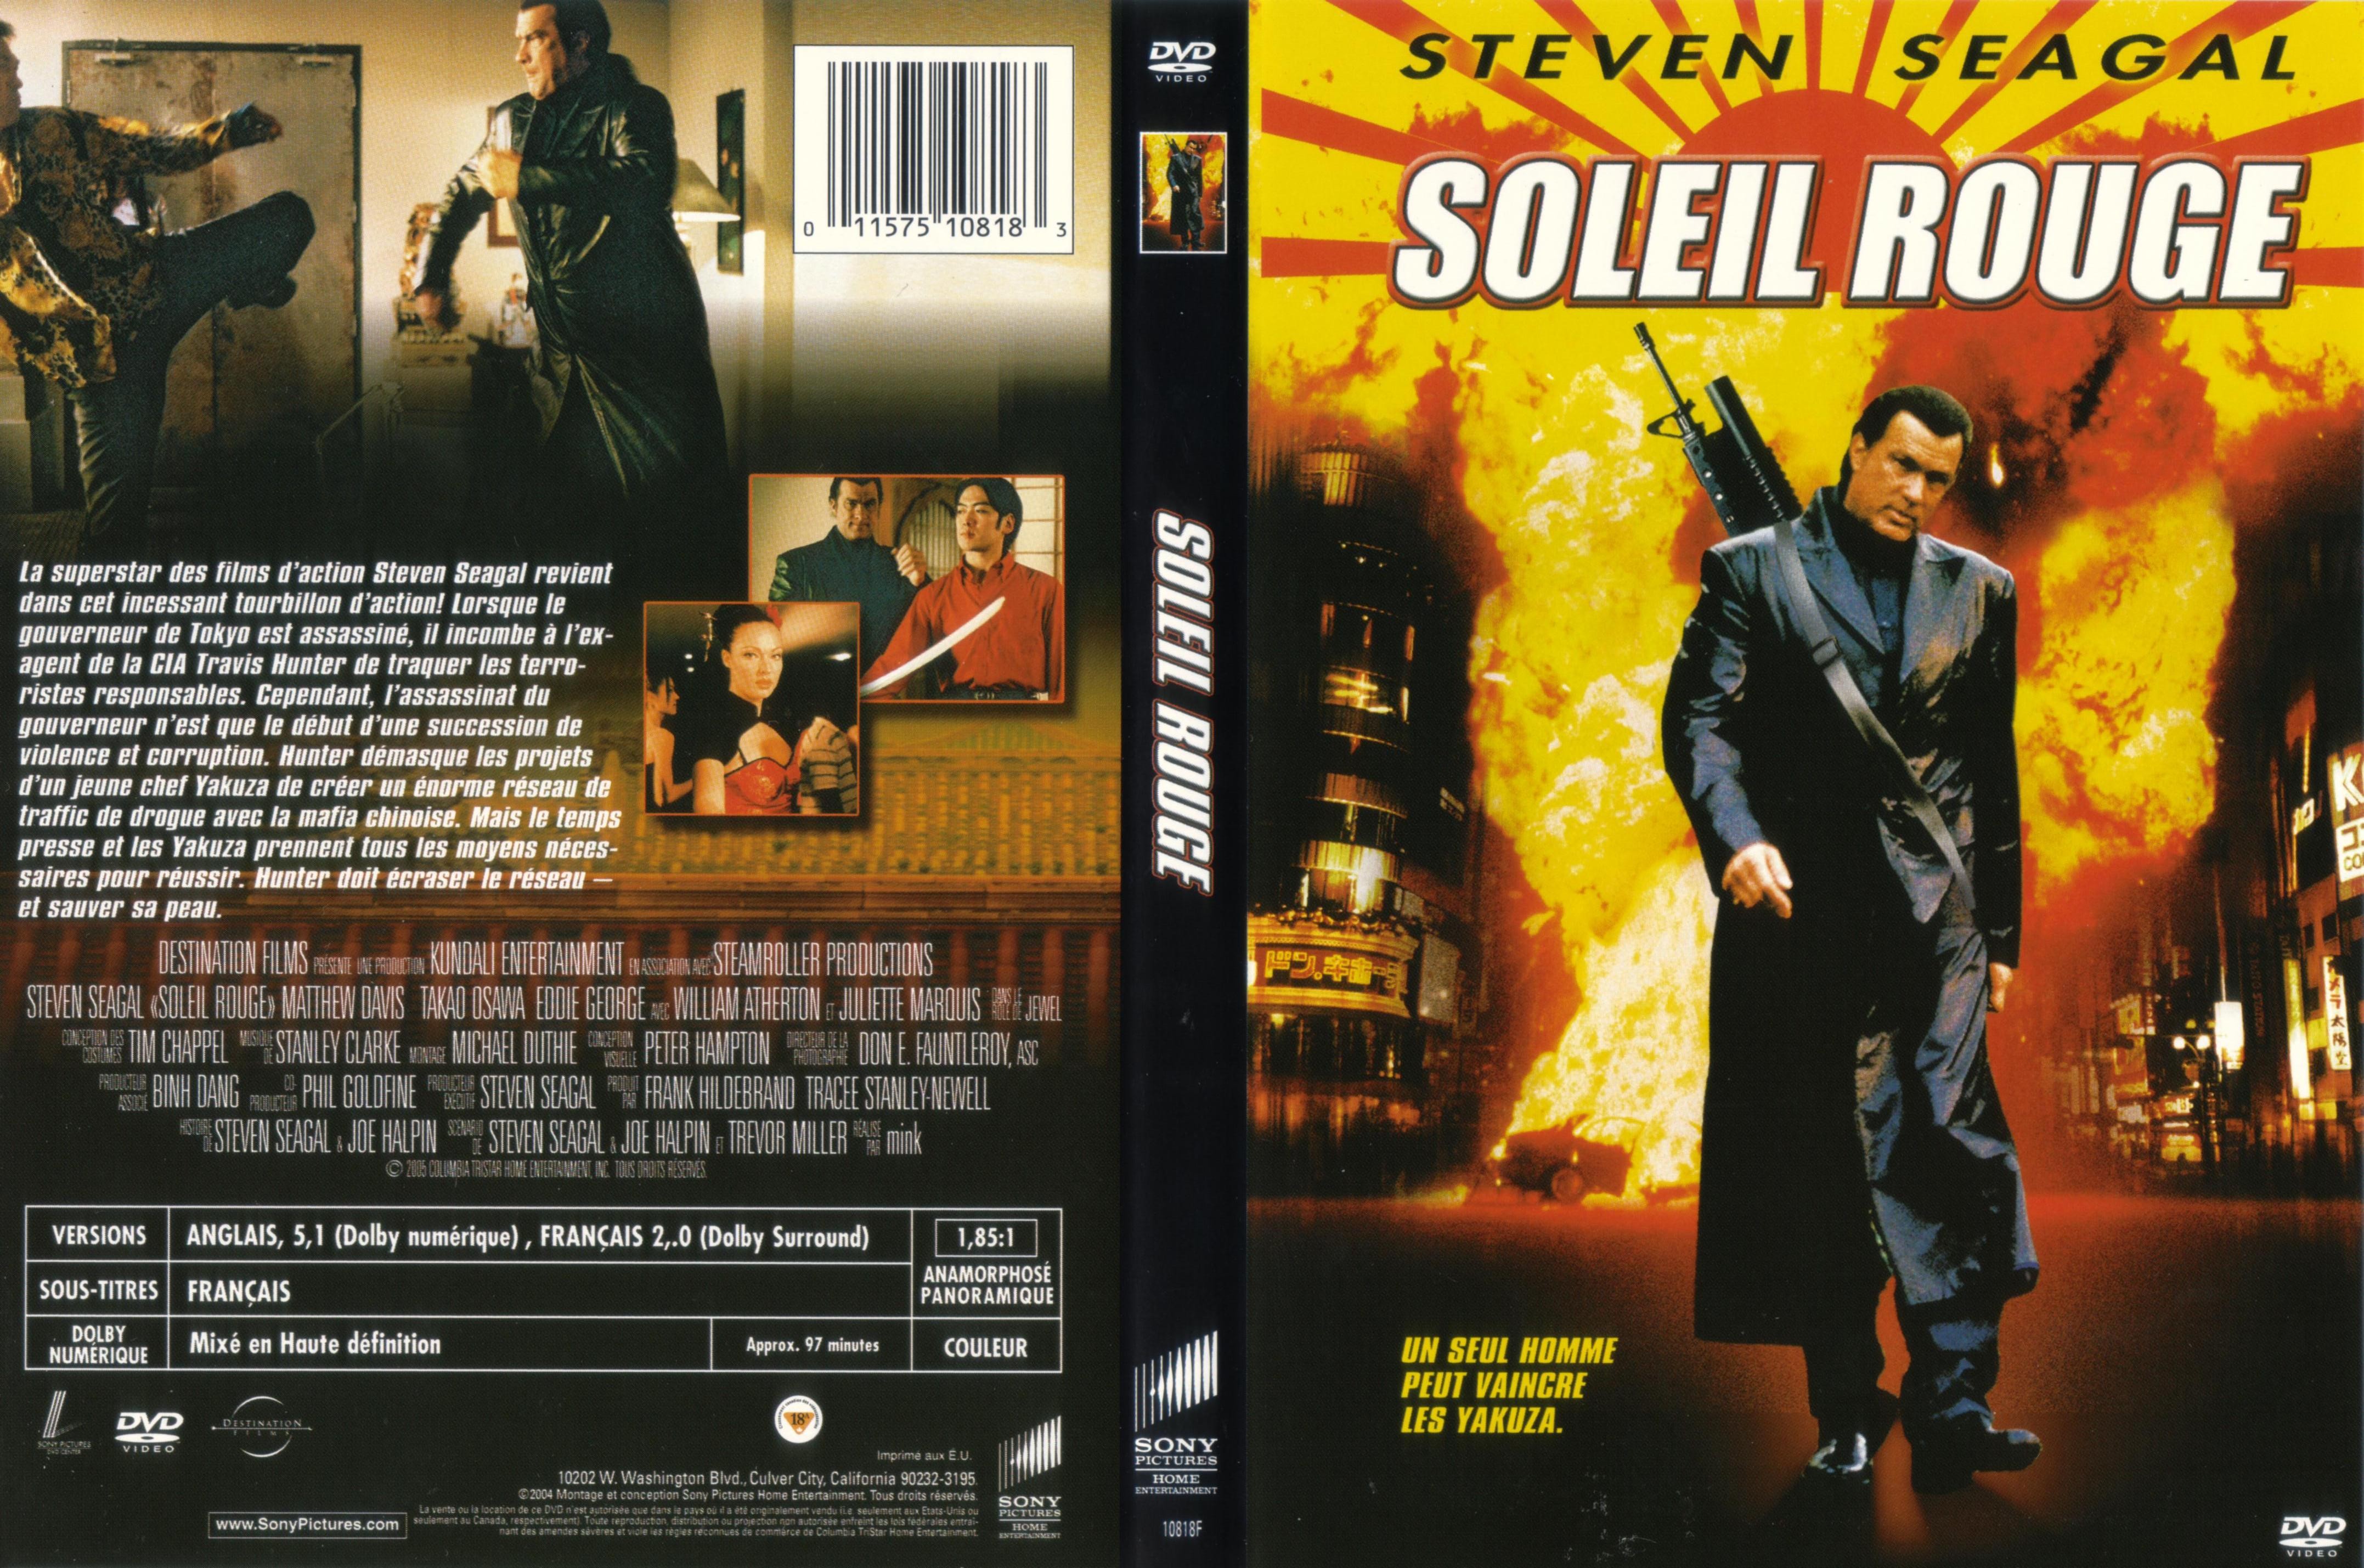 Jaquette DVD Soleil rouge (Steven Seagal)